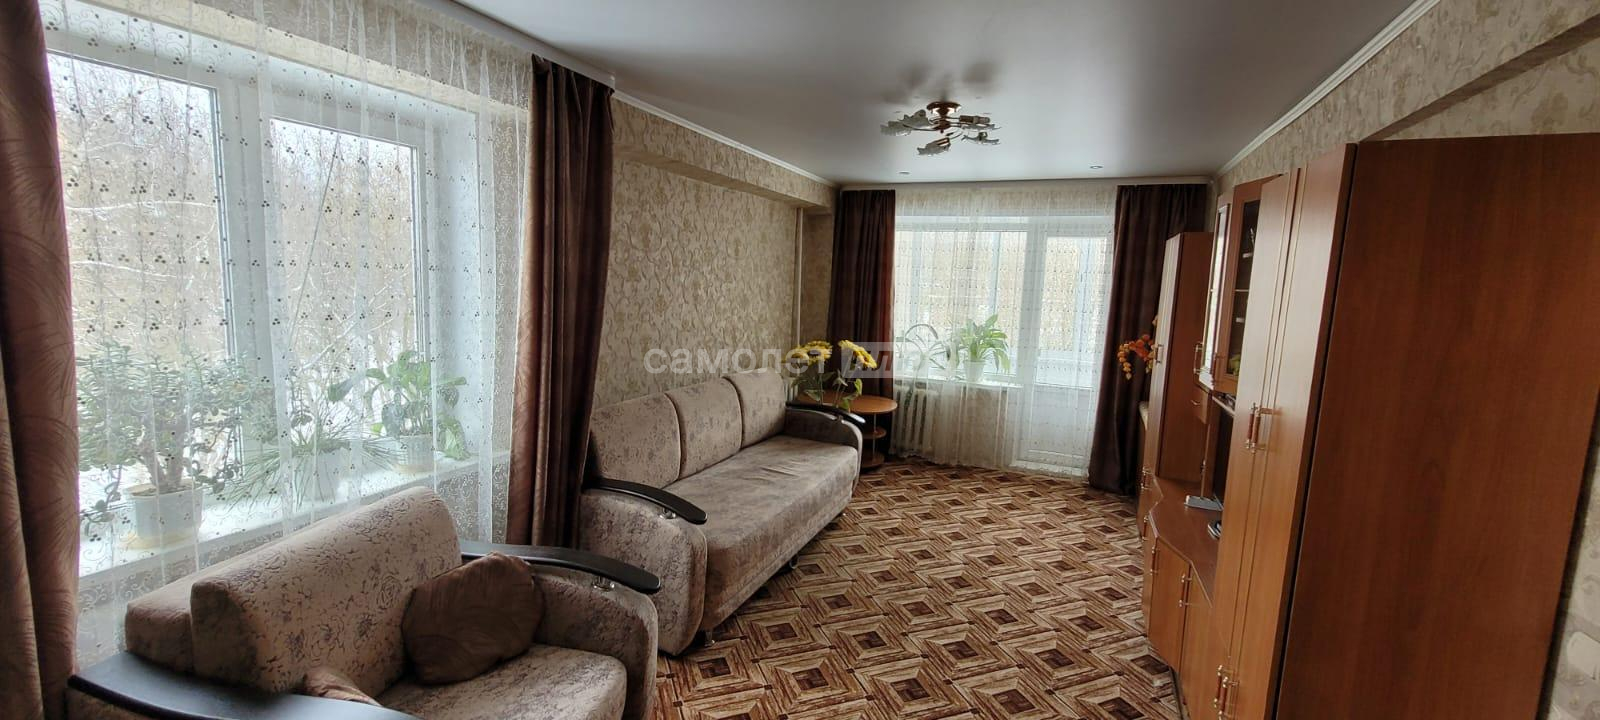 Продажа 3-комнатной квартиры, Калуга, Вишневского улица,  д.17